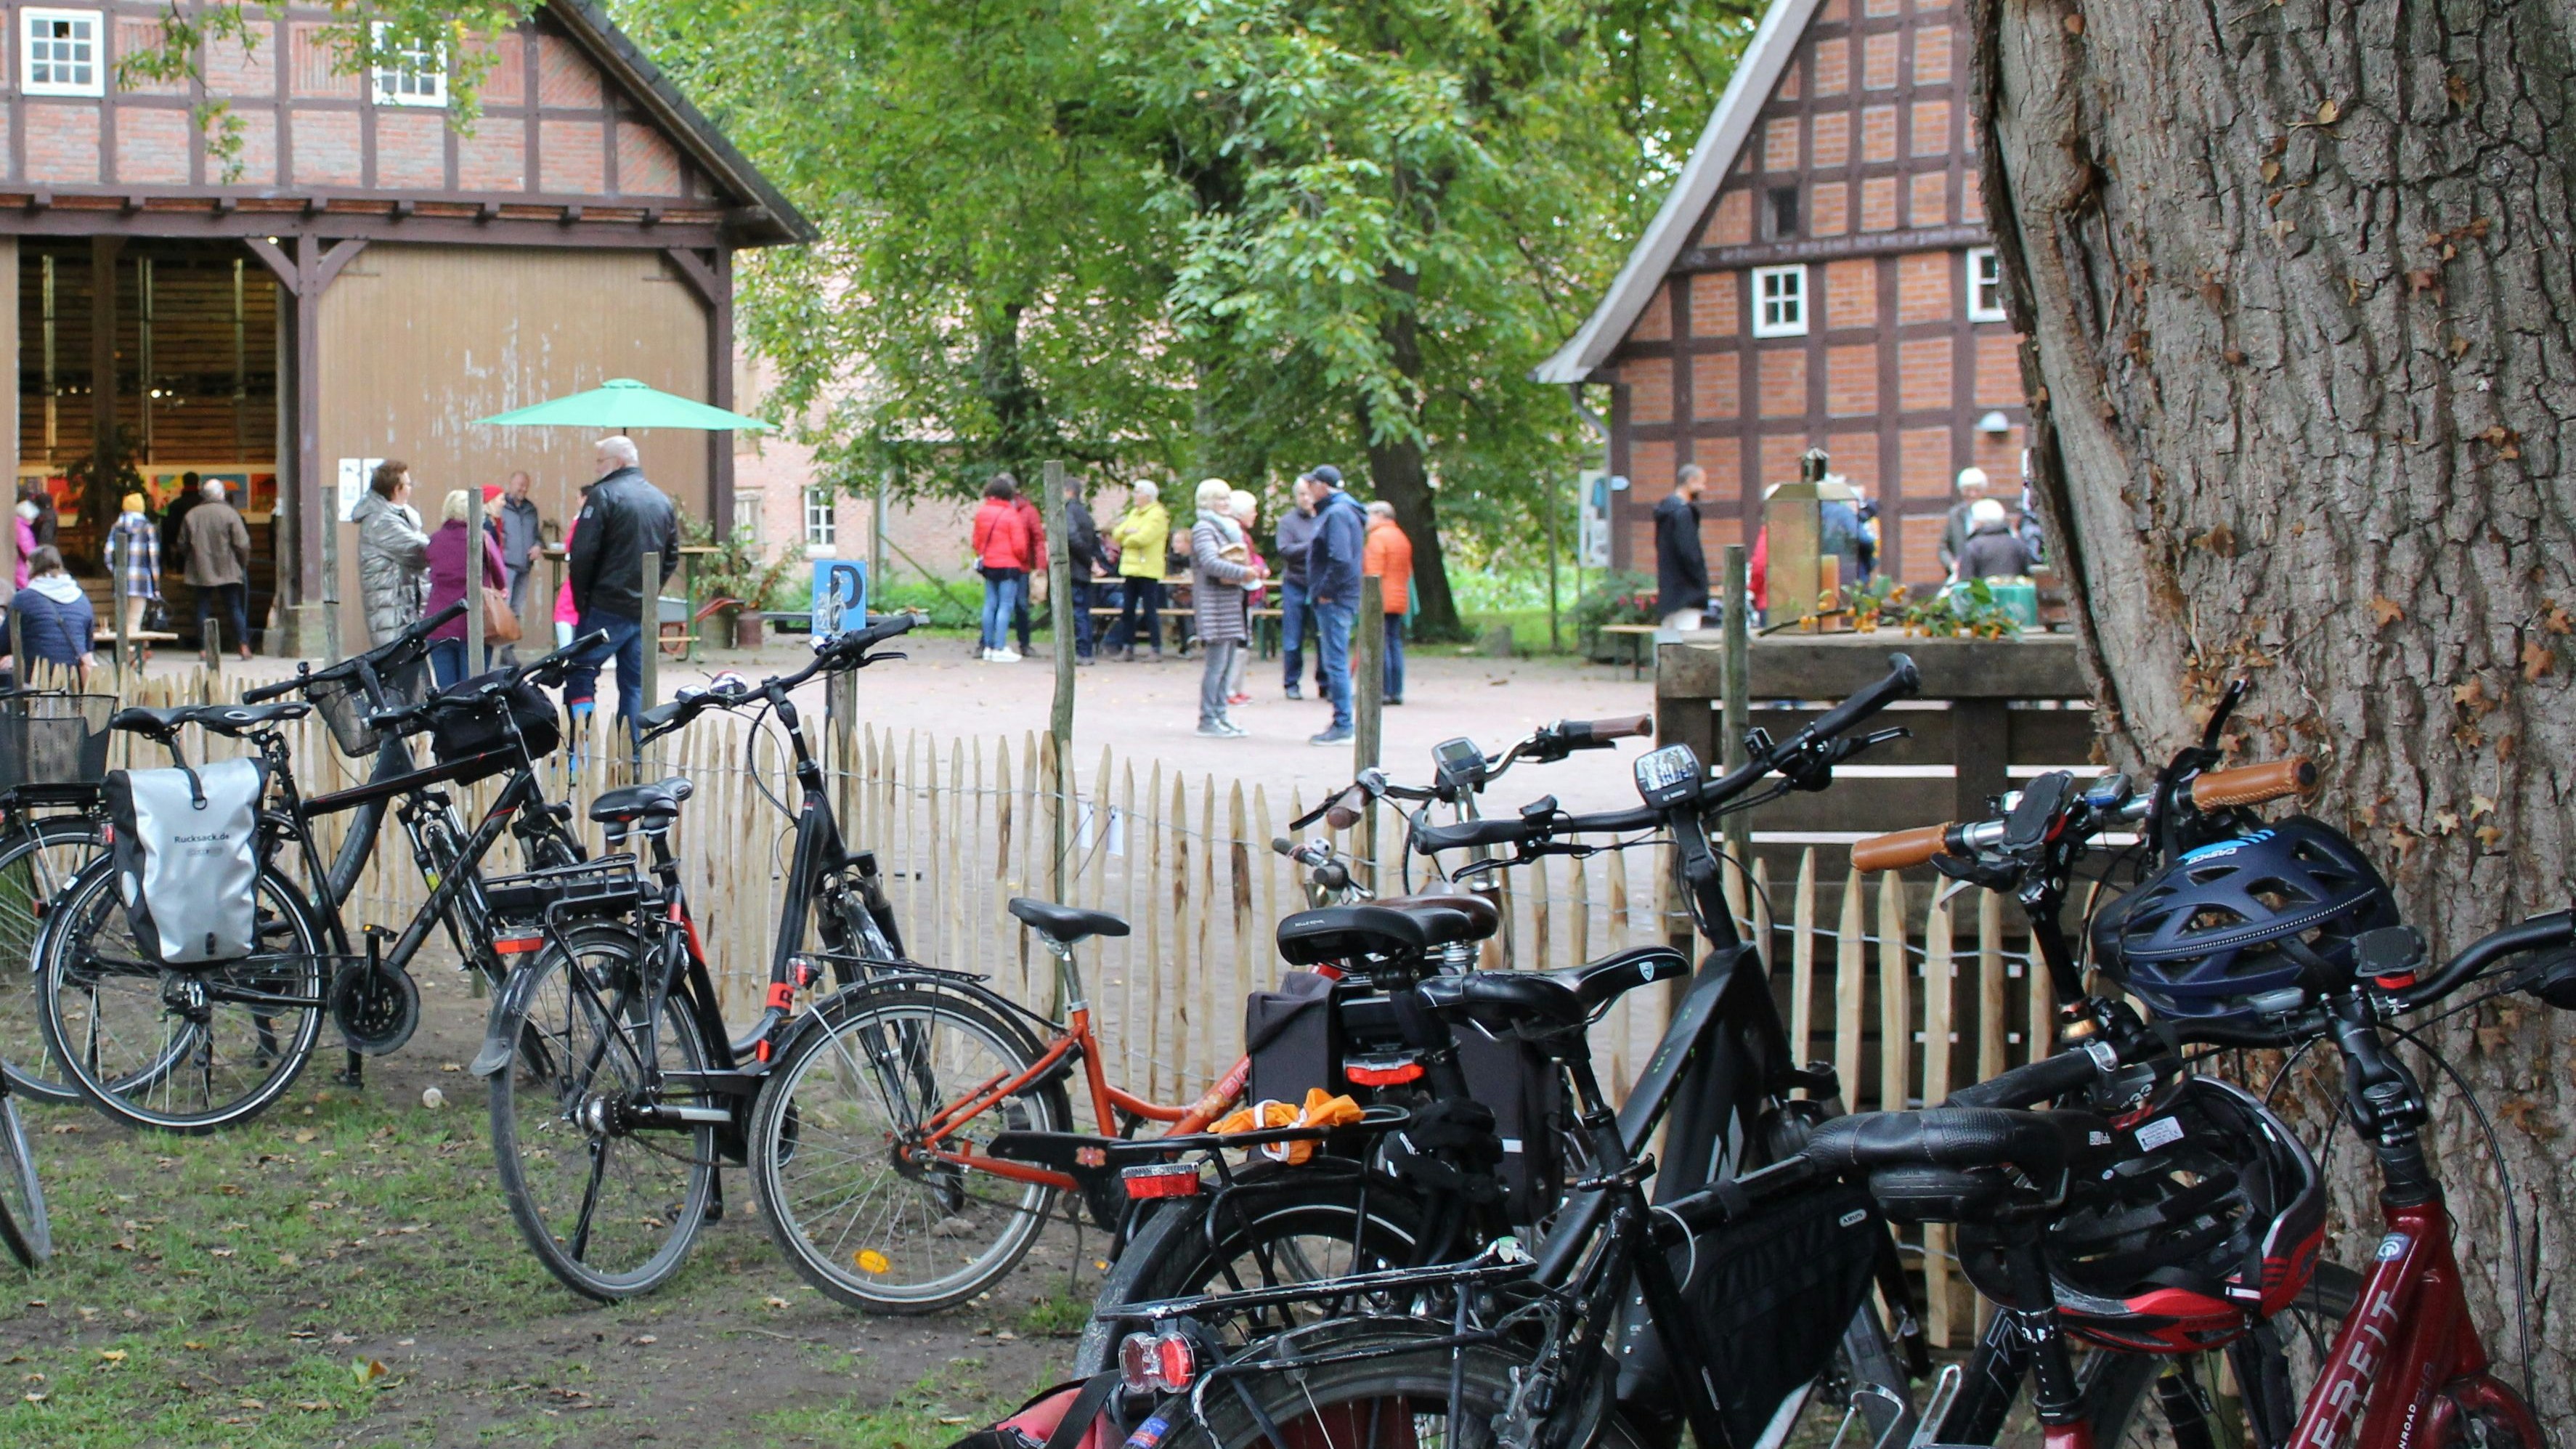 Steht unter Denkmalschutz: Eine Station bei der Fahrradpromenade wird der Obsthof Bergmann in Hagstedt / Visbek sein. Foto: Obsthof Bergmann